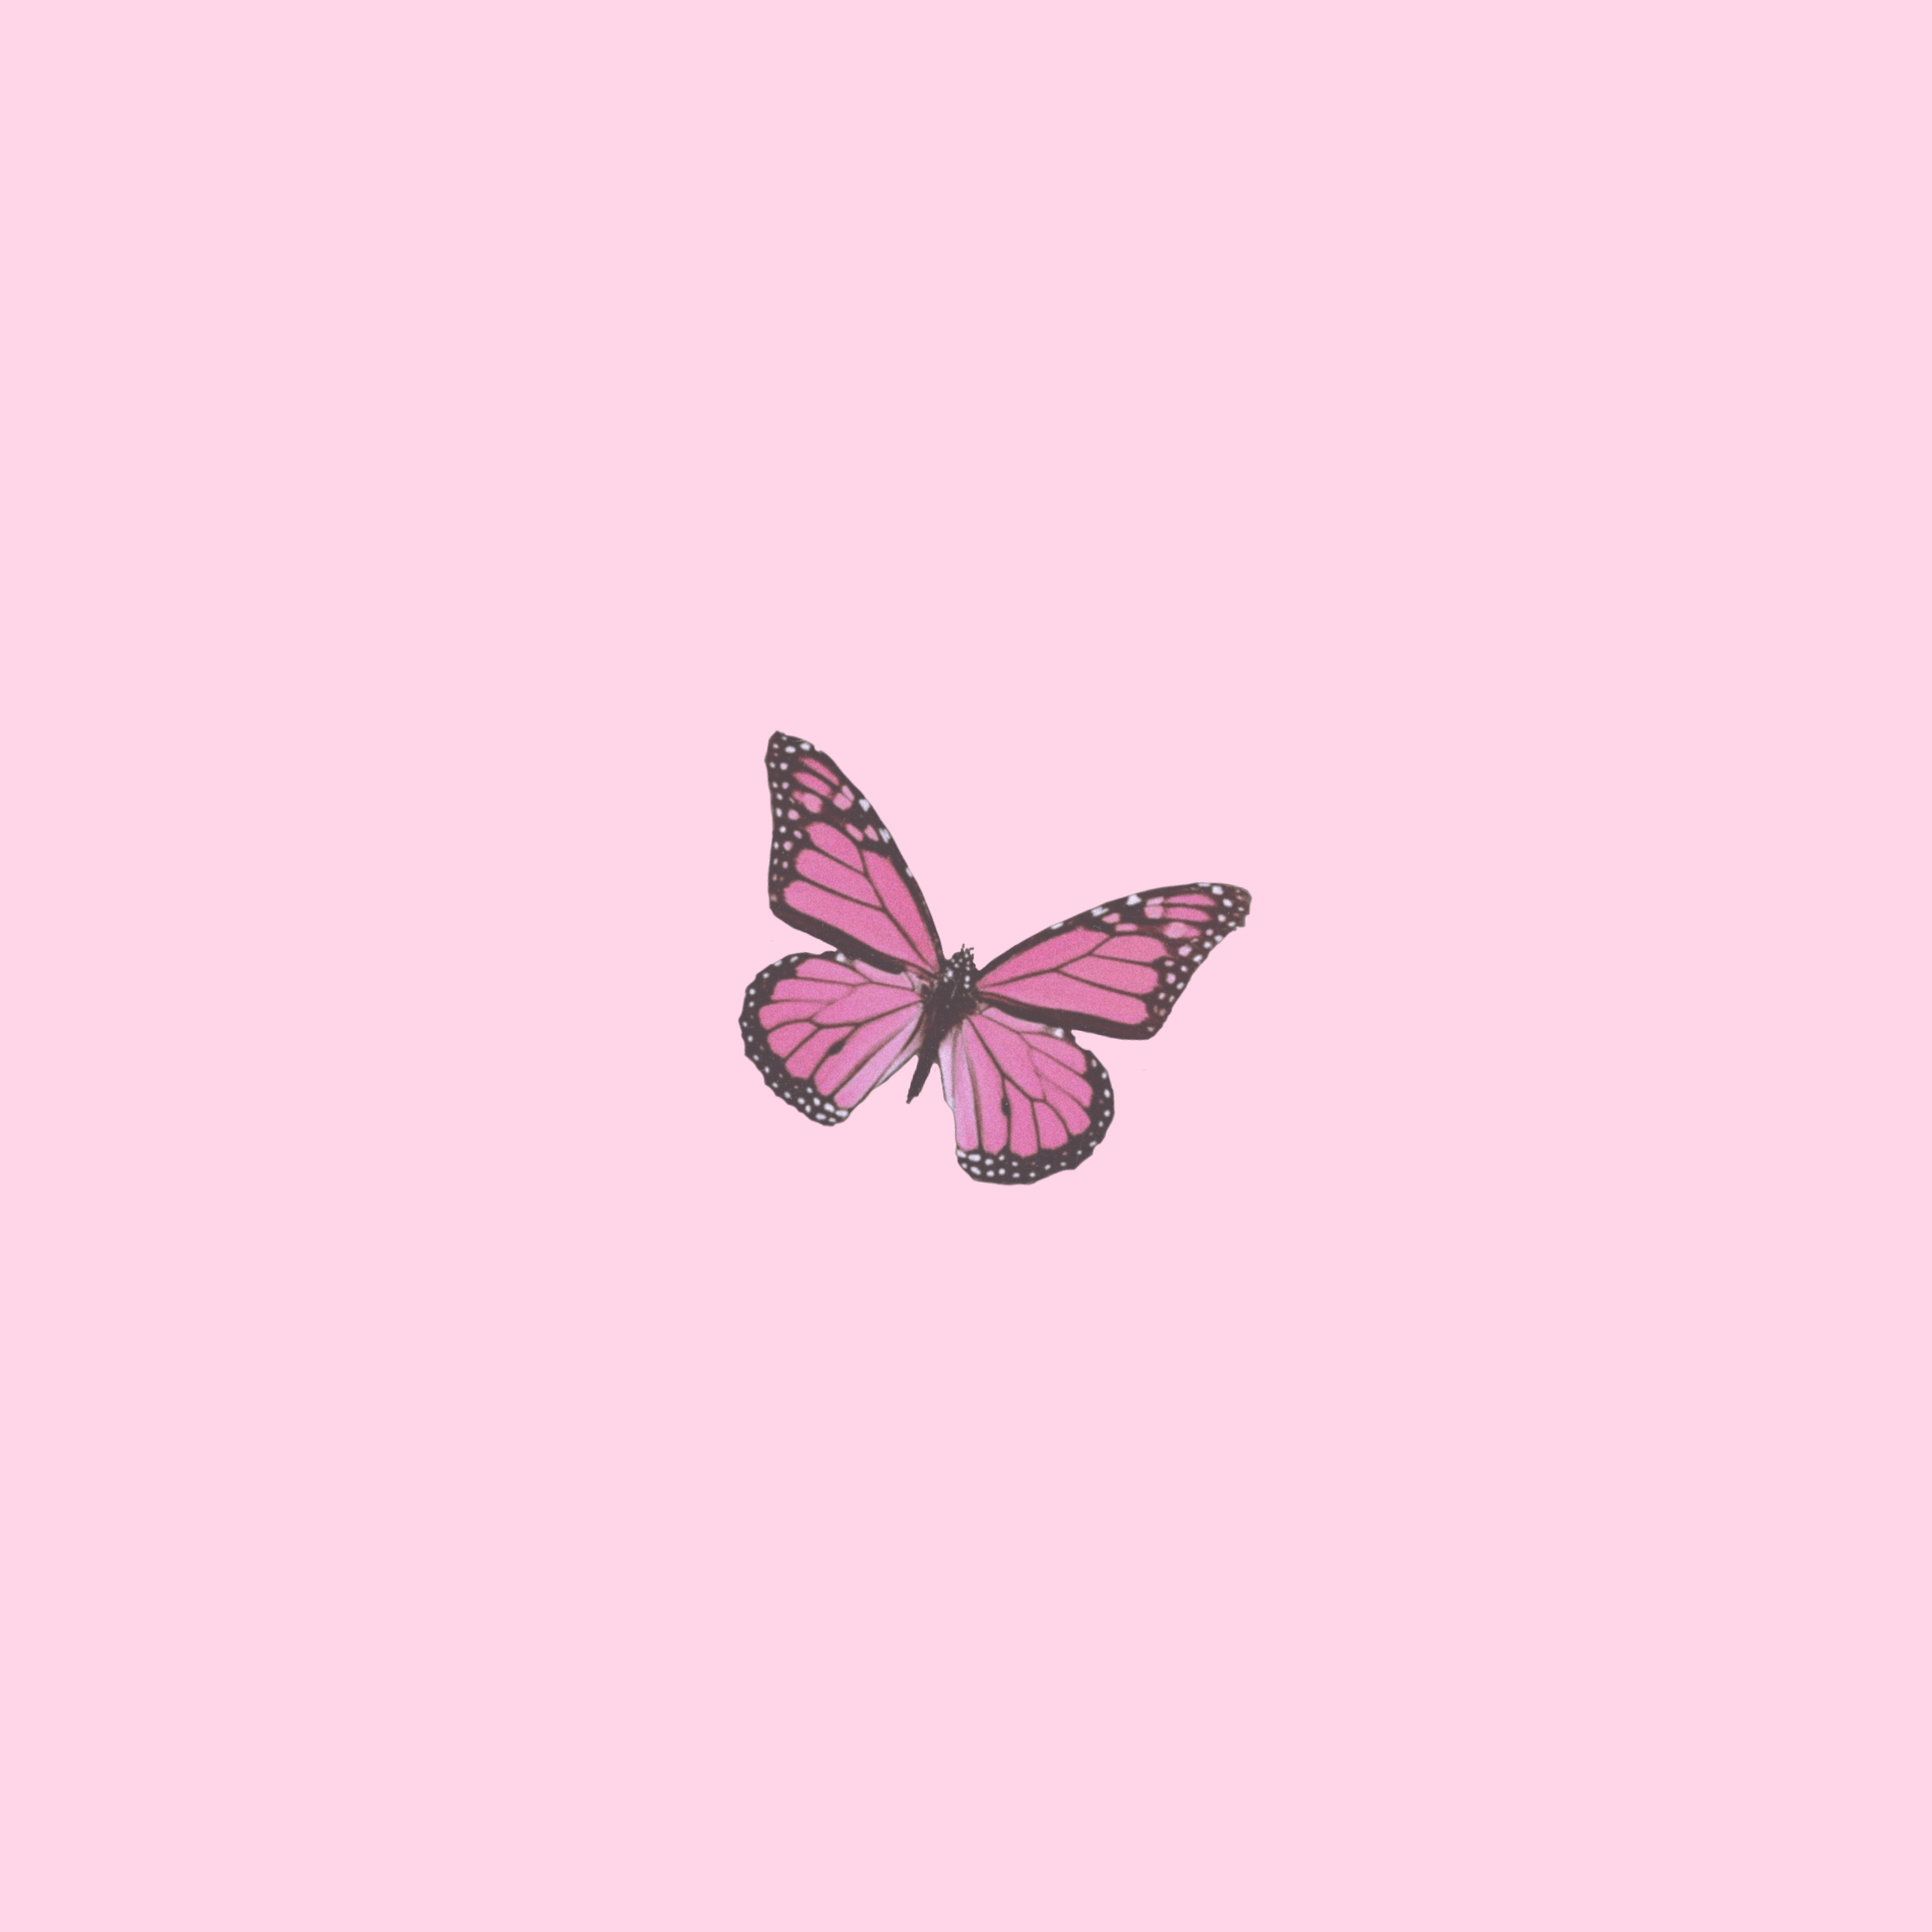 Aesthetic Wallpaper Pink Butterfly / Best Pink Butterfly Wallpaper Hd ...